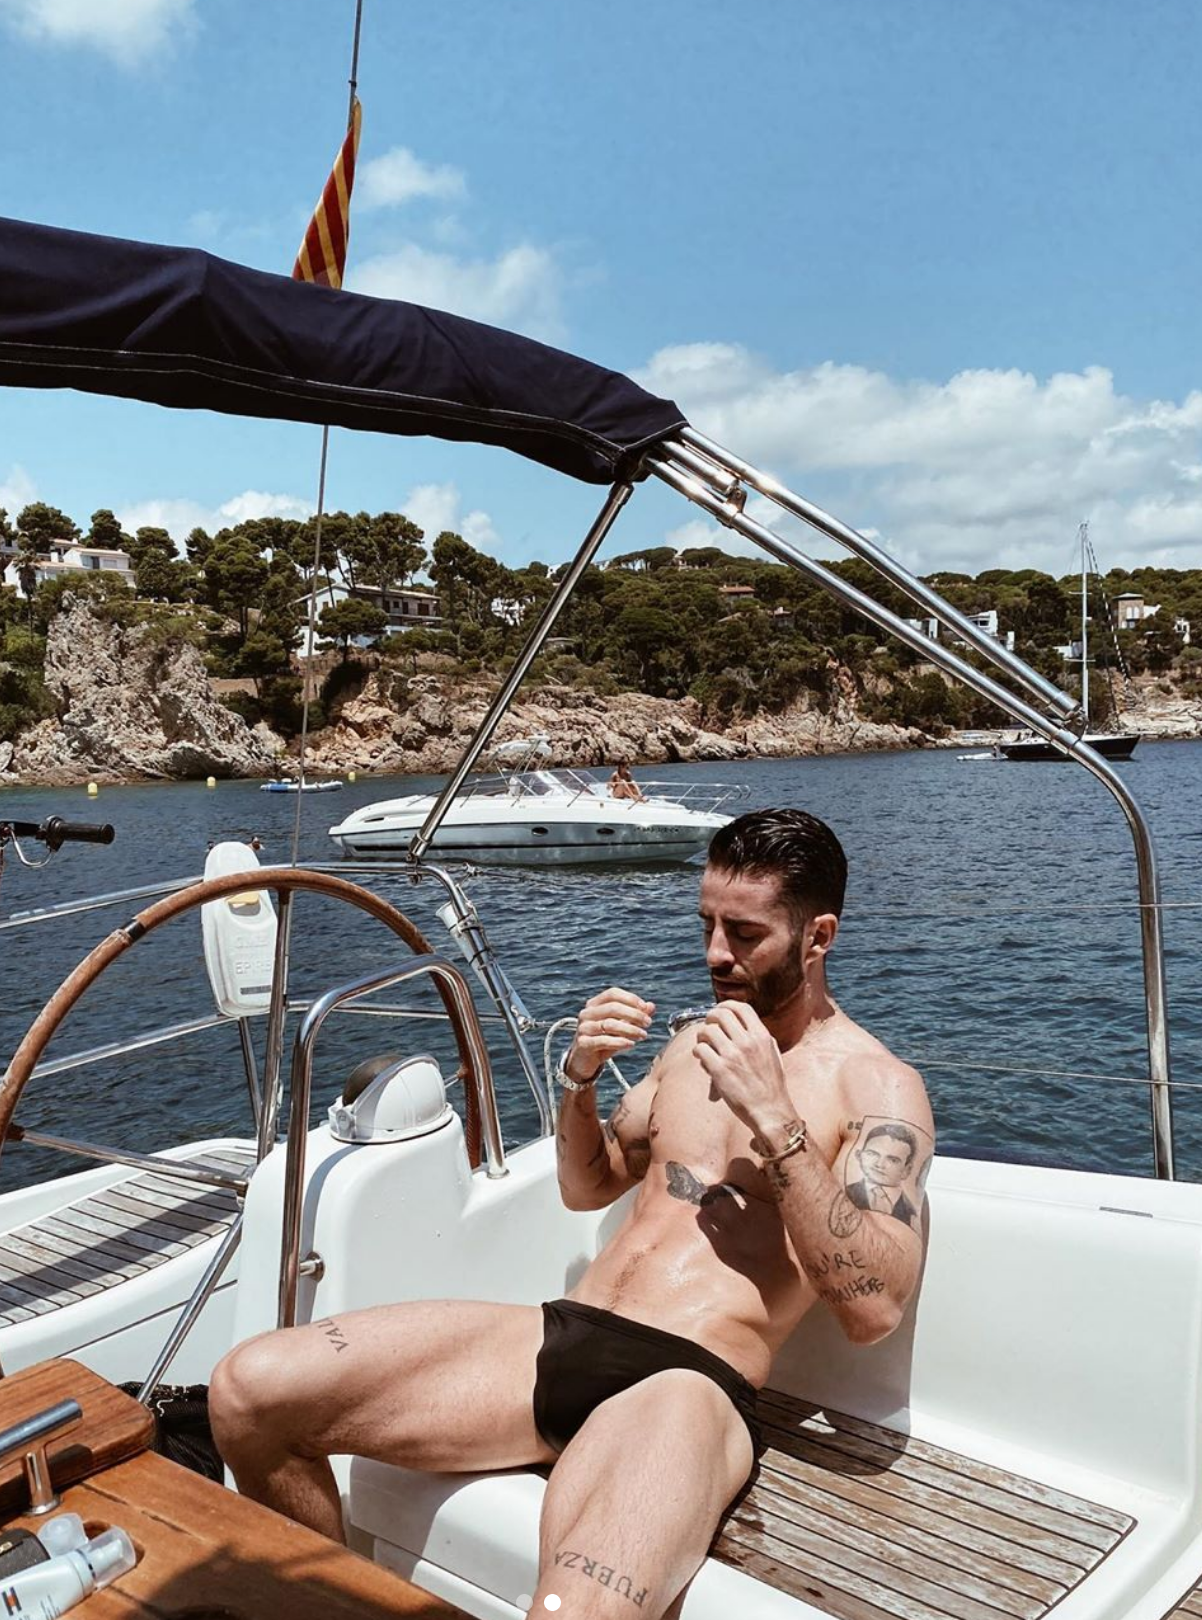 Pelayo Díaz vuelve a presumir de cuerpazo en bañador con este posado en Ibiza